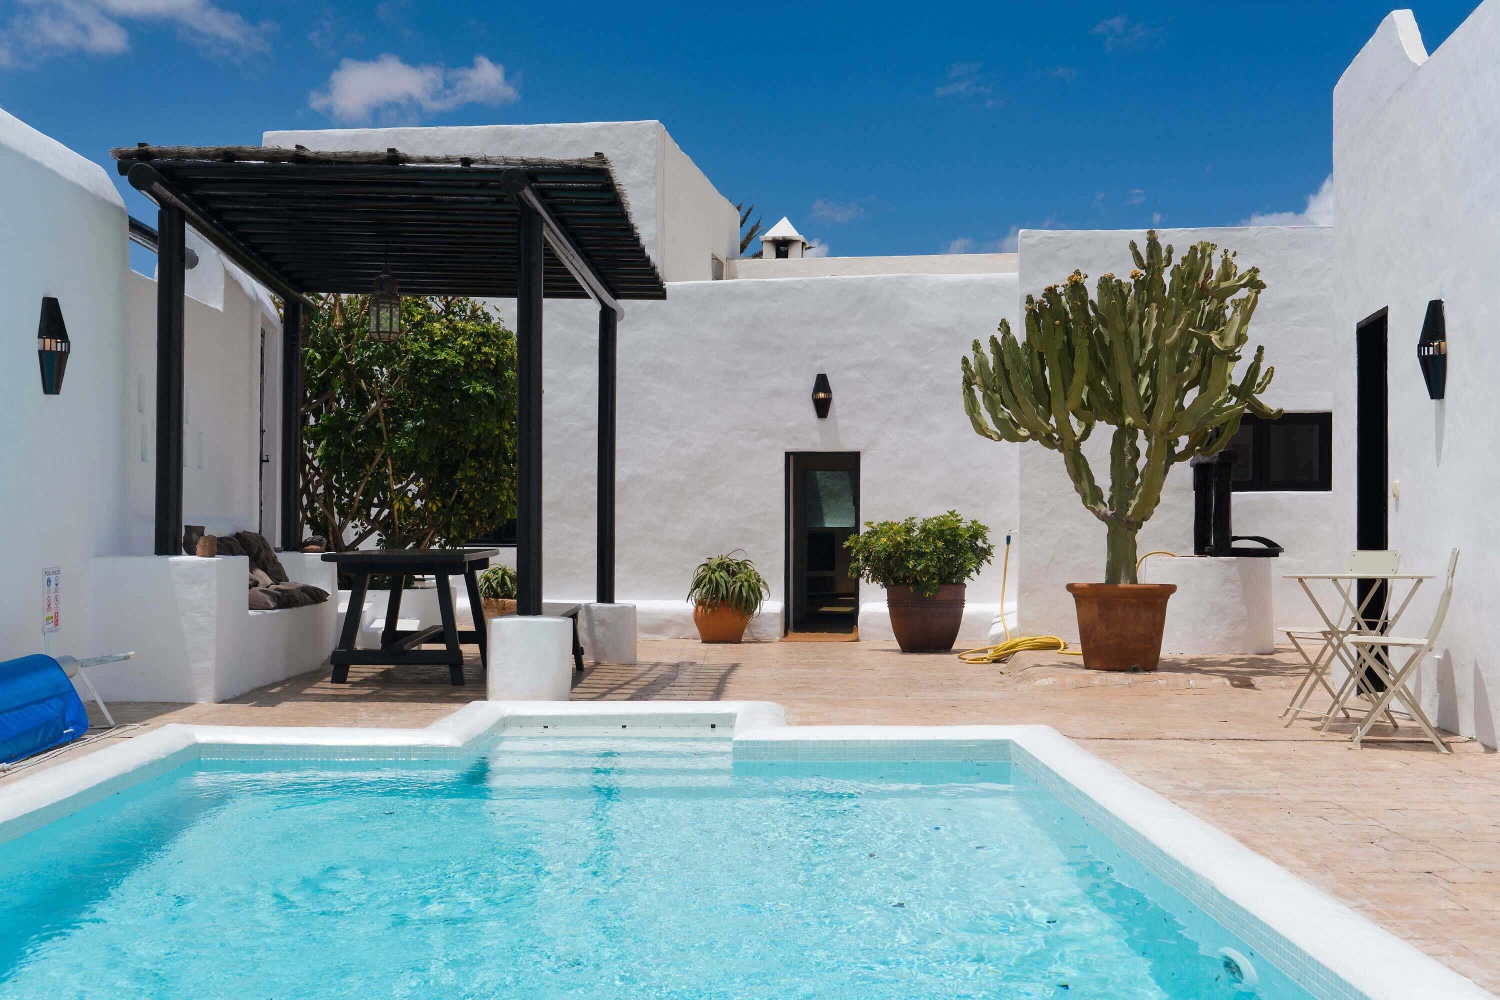 Luxe huis met verwarmd privézwembad en een ideale locatie om de rest van Lanzarote te verkennen